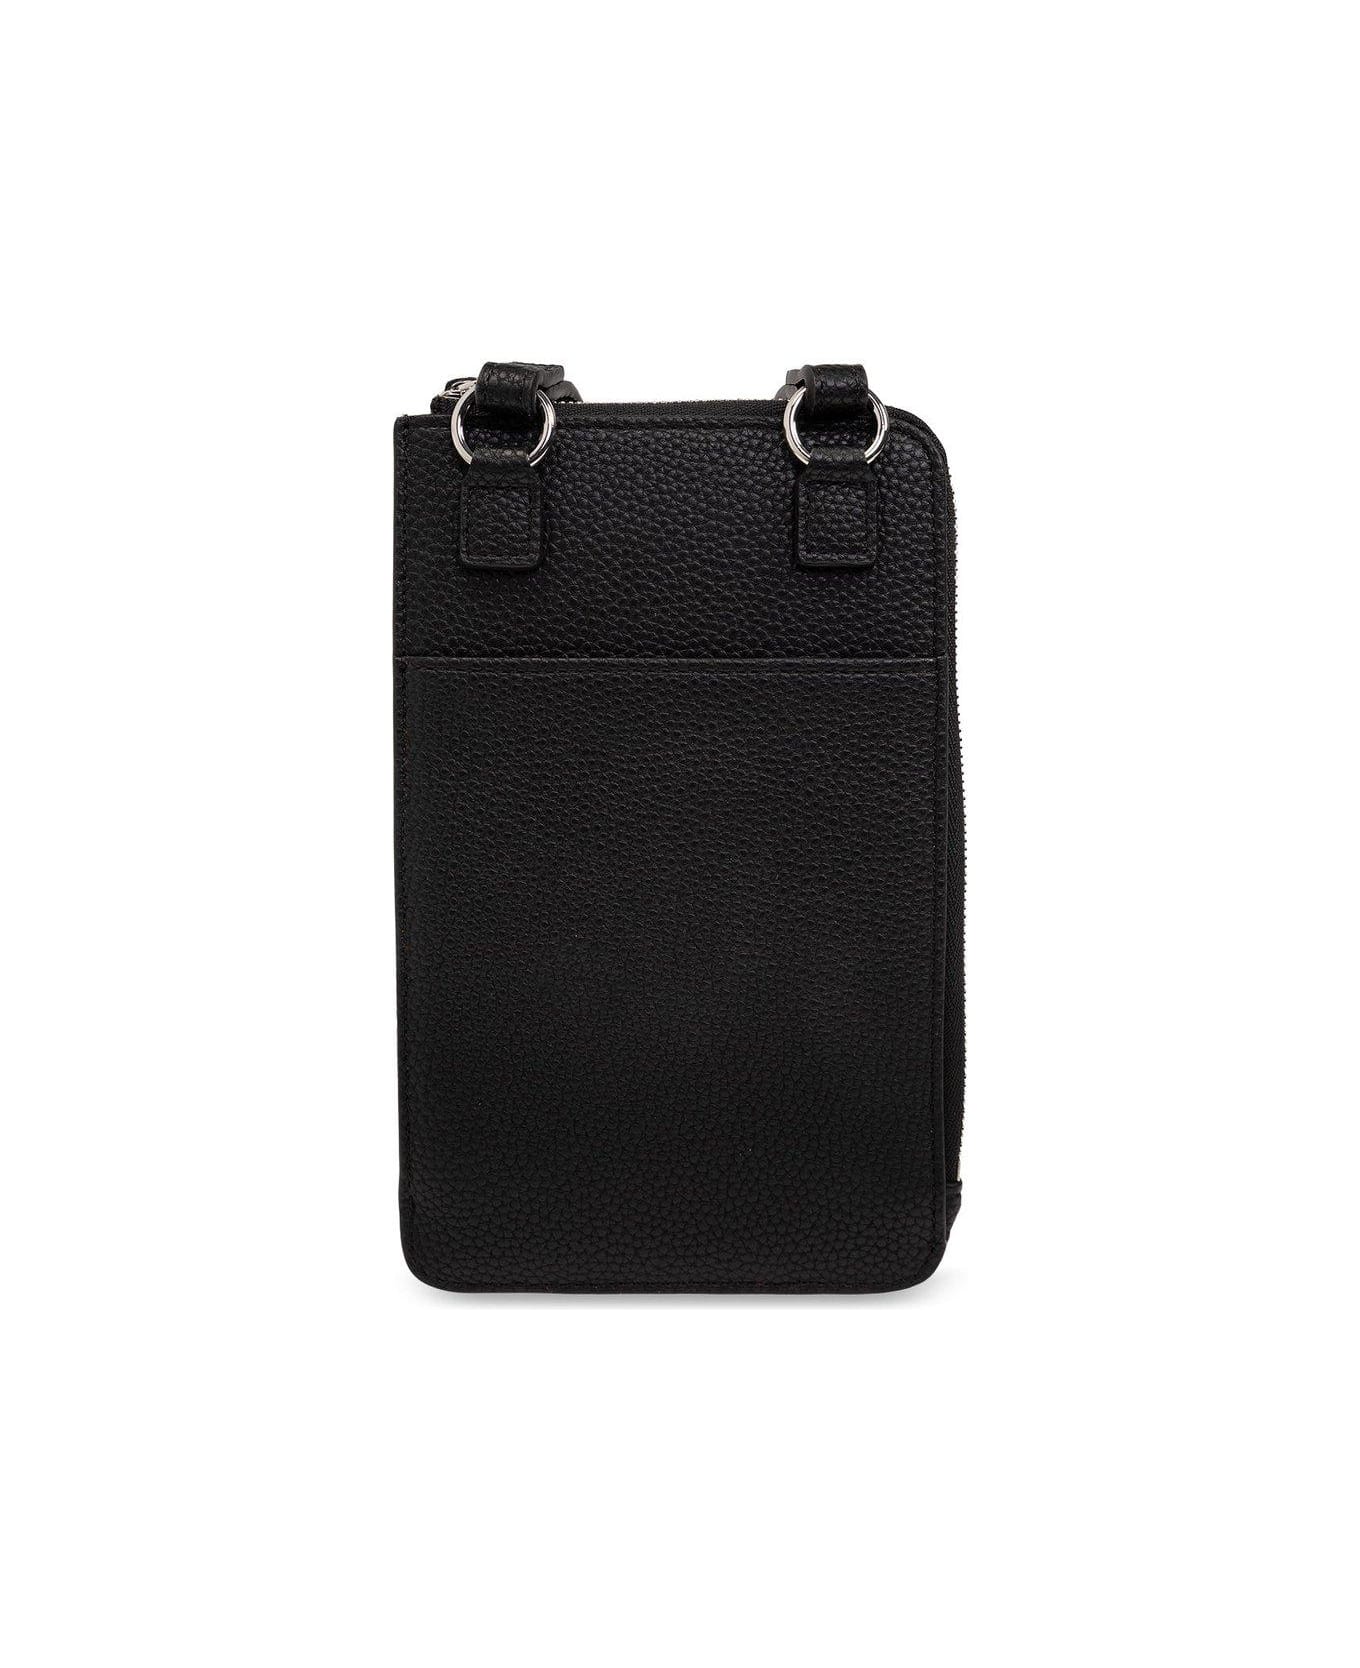 Emporio Armani Strapped Phone Holder - Black